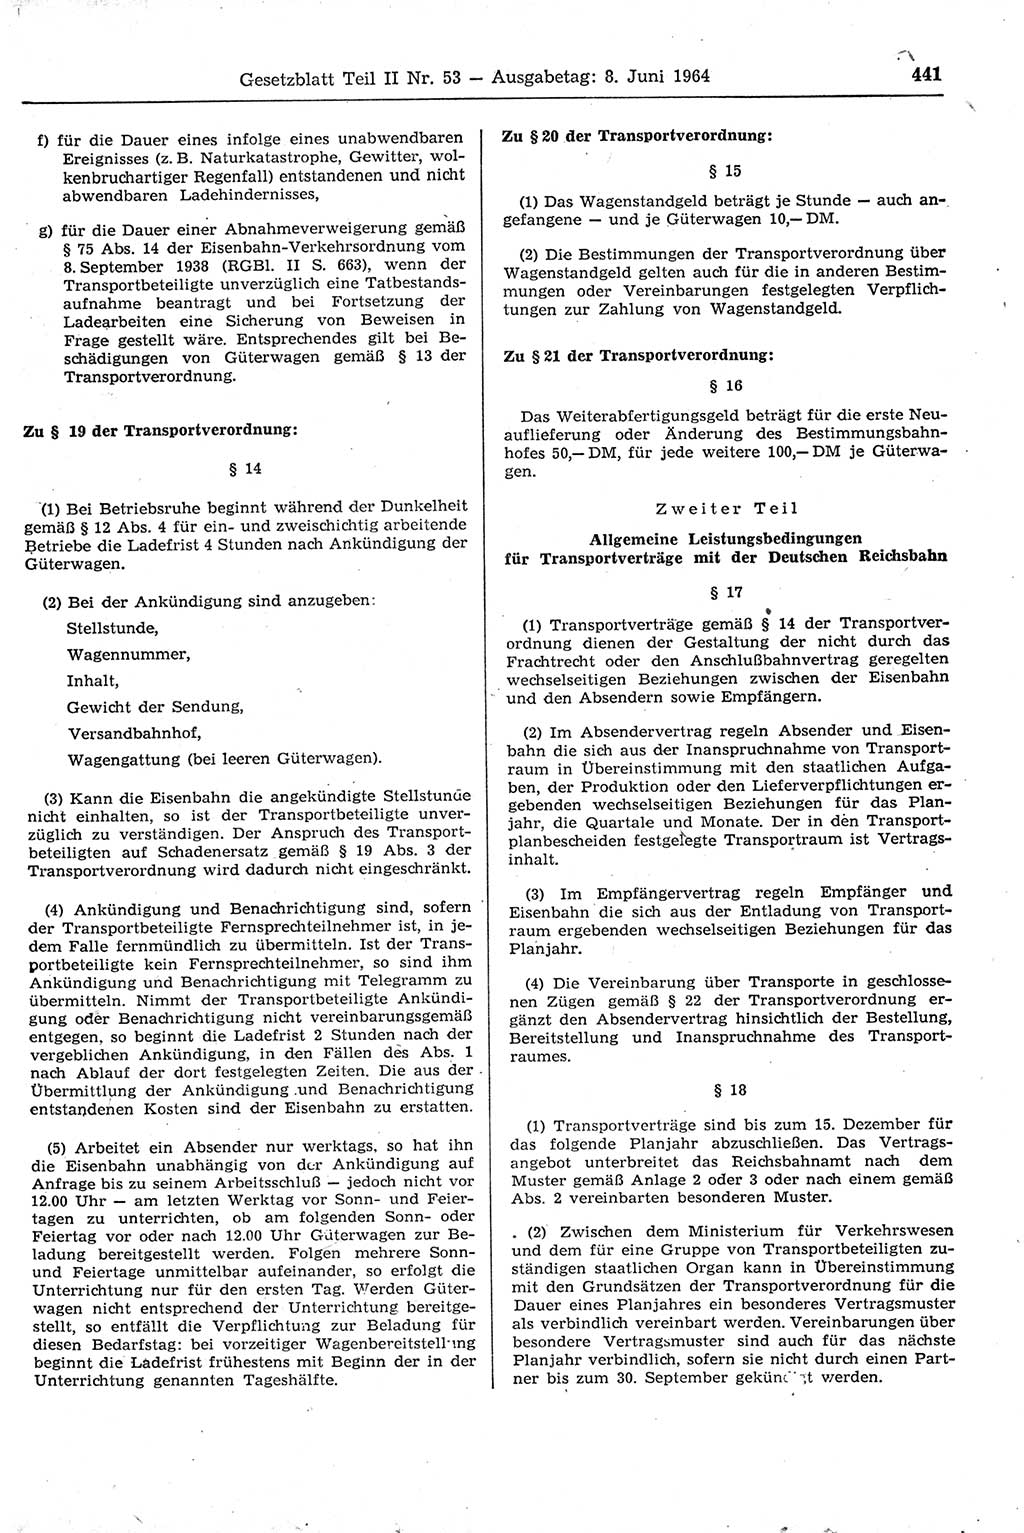 Gesetzblatt (GBl.) der Deutschen Demokratischen Republik (DDR) Teil ⅠⅠ 1964, Seite 441 (GBl. DDR ⅠⅠ 1964, S. 441)